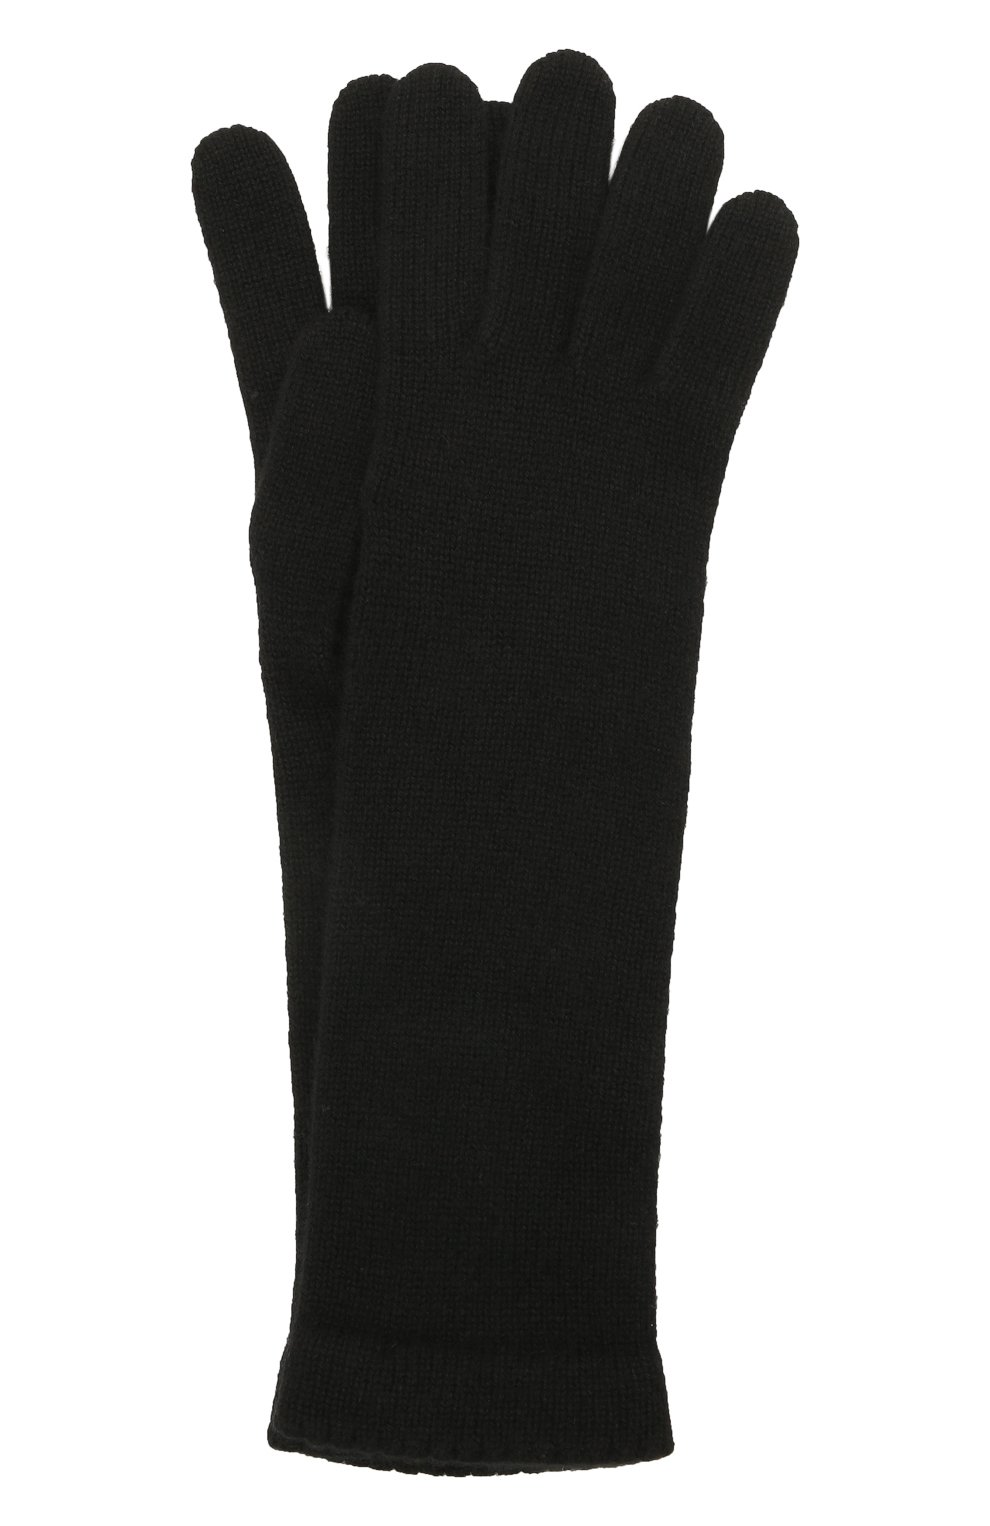 Женские кашемировые перчатки INVERNI черного цвета, арт. 3078 GU | Фото 1 (Материал: Текстиль, Кашемир, Шерсть; Кросс-КТ: Трикотаж)